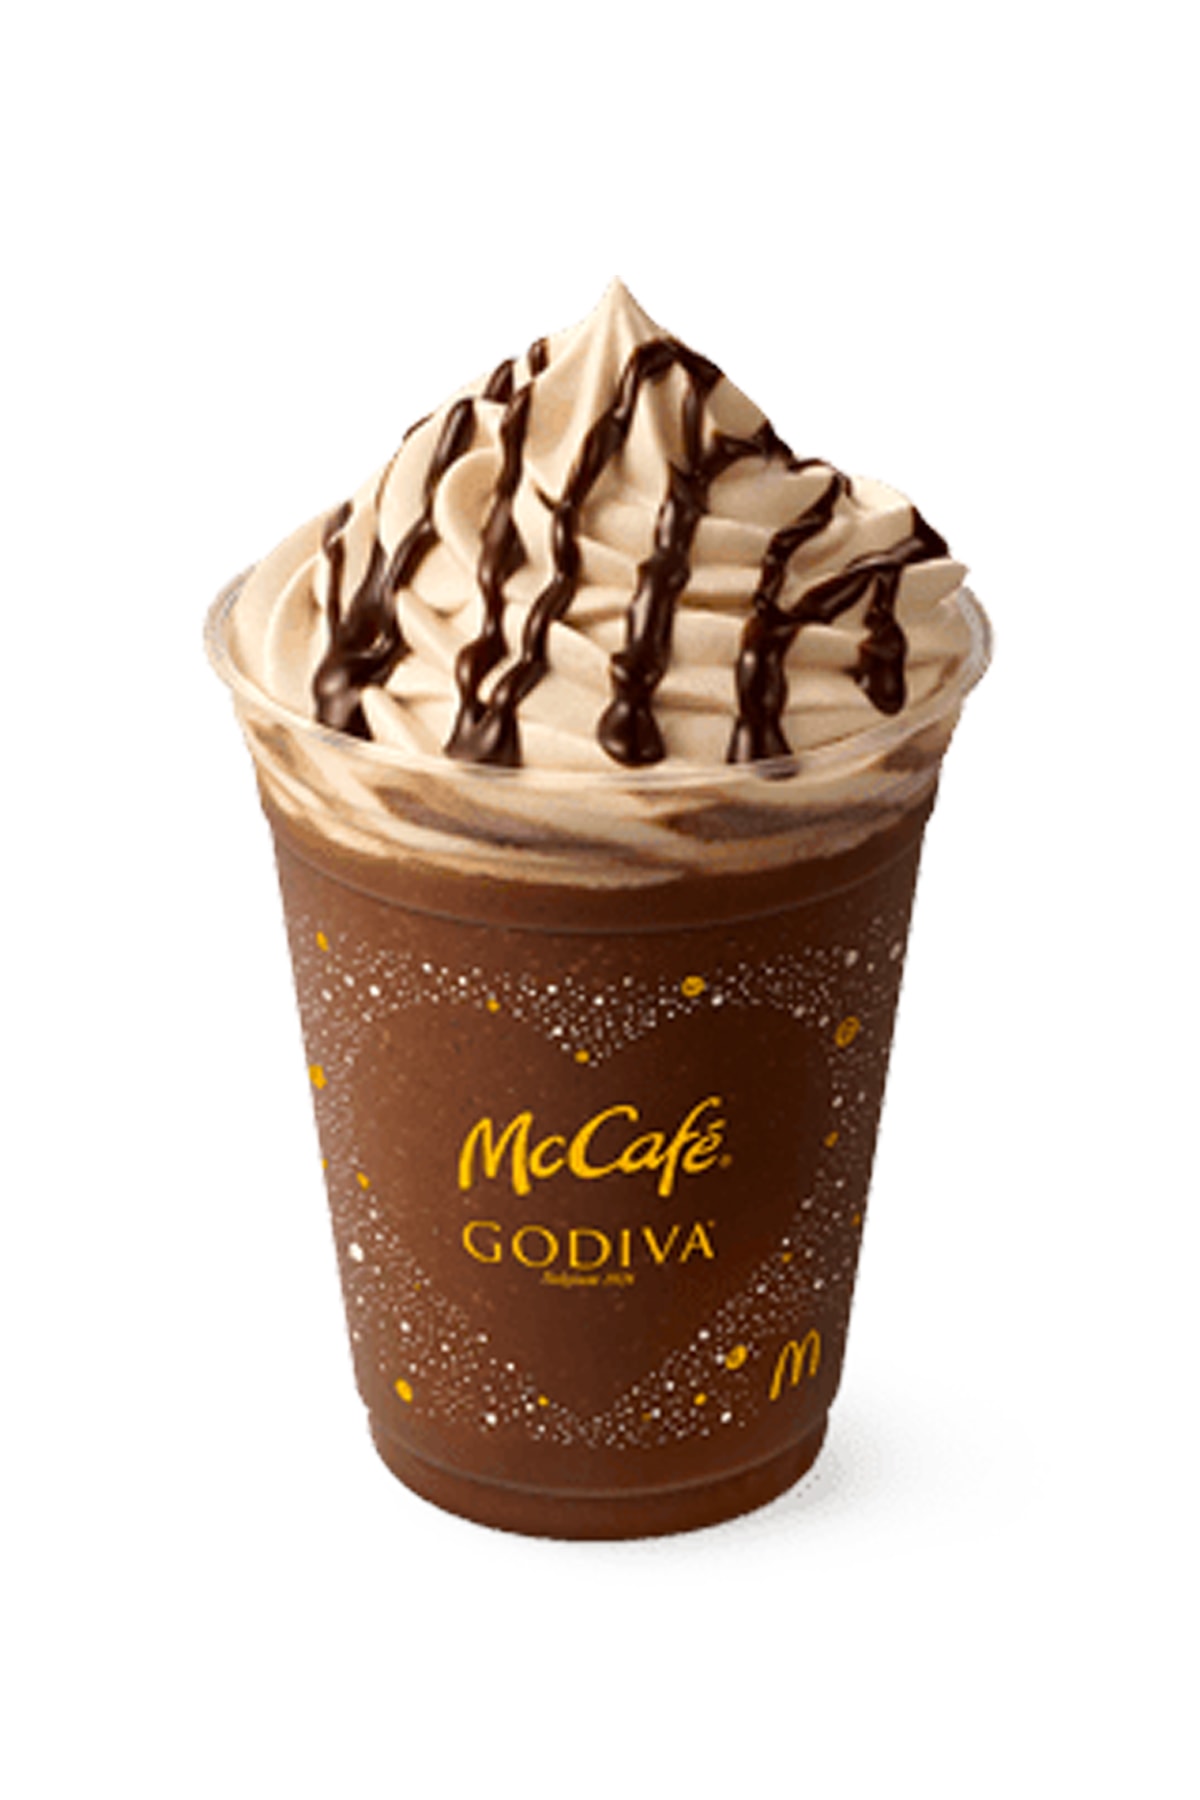 日本 McDonald’s 推出全新 GODIVA x McCafé 系列飲品